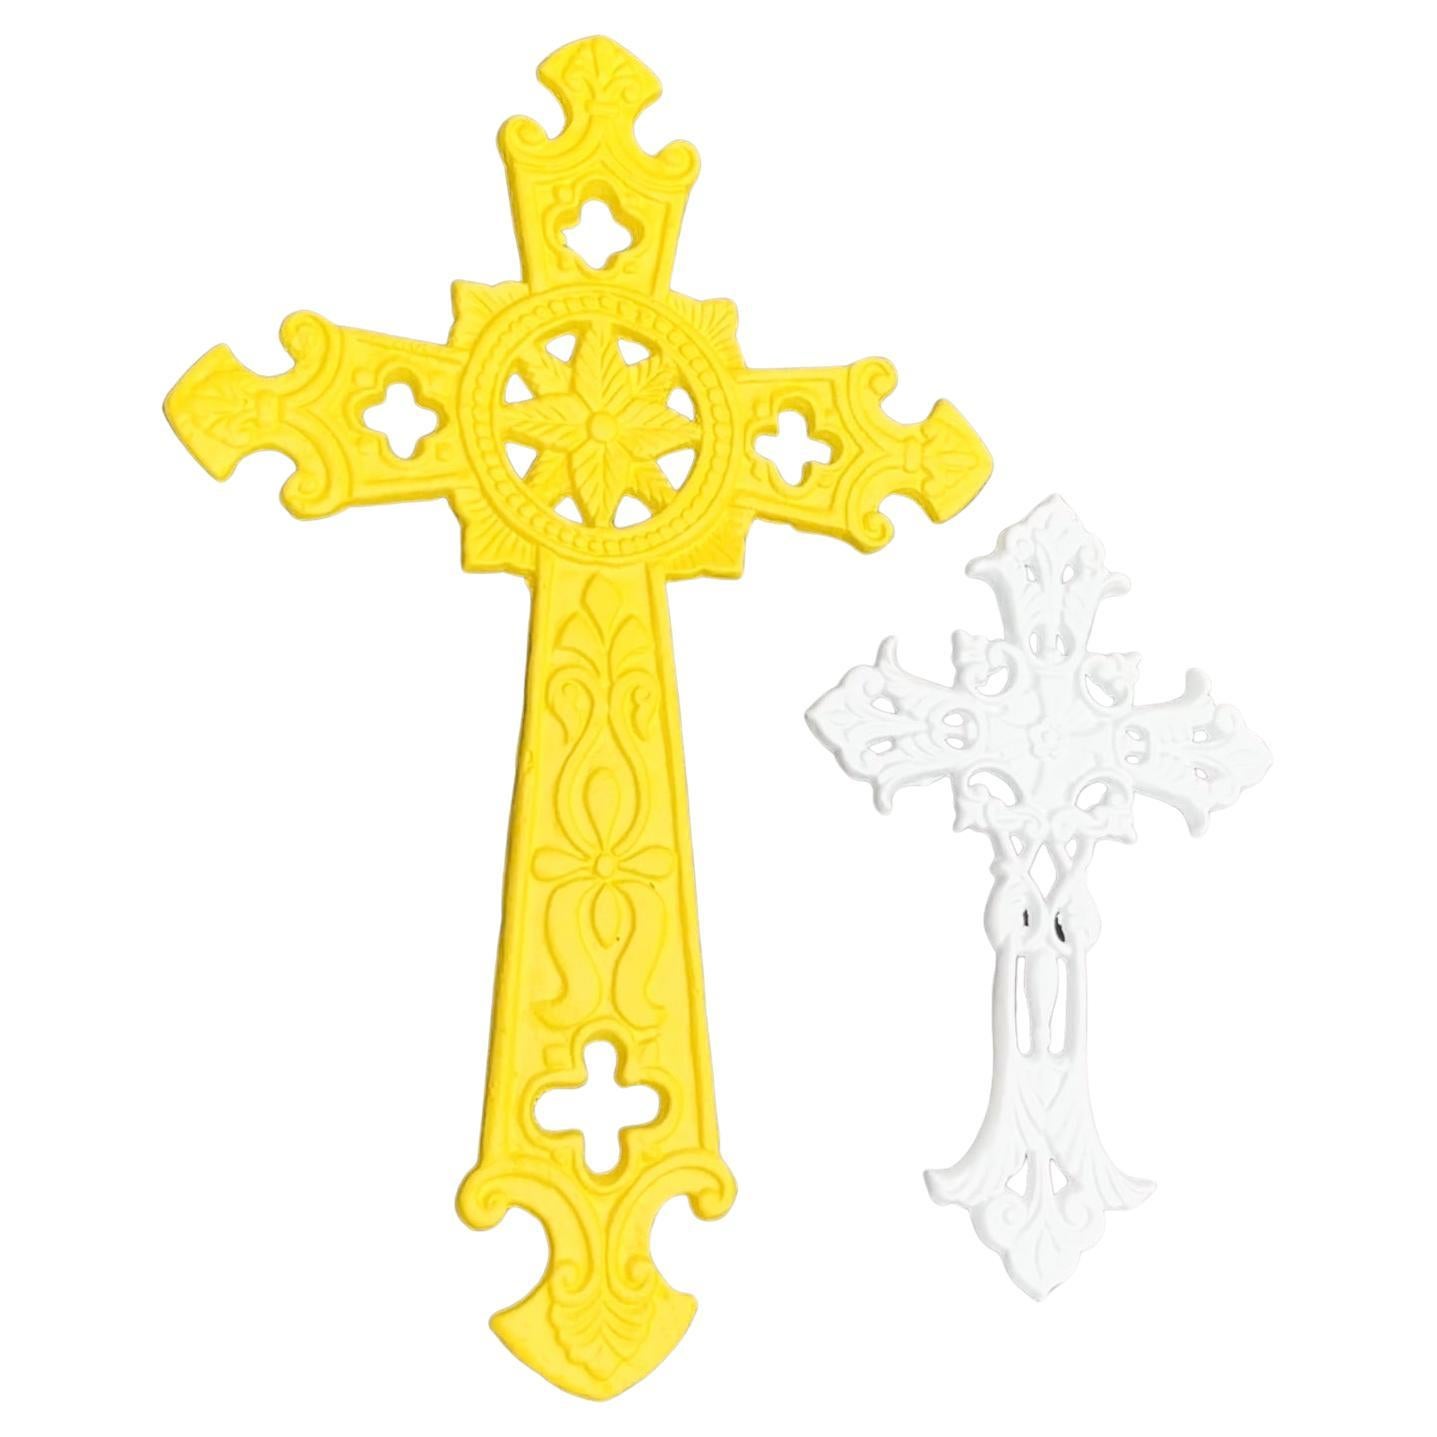 Ensemble de deux croix ou crucifix en fer Vintage, nouvellement revêtus par poudrage en blanc brillant et jaune soleil.
Vendu en lot de deux, le prix indiqué est celui des deux articles.
 